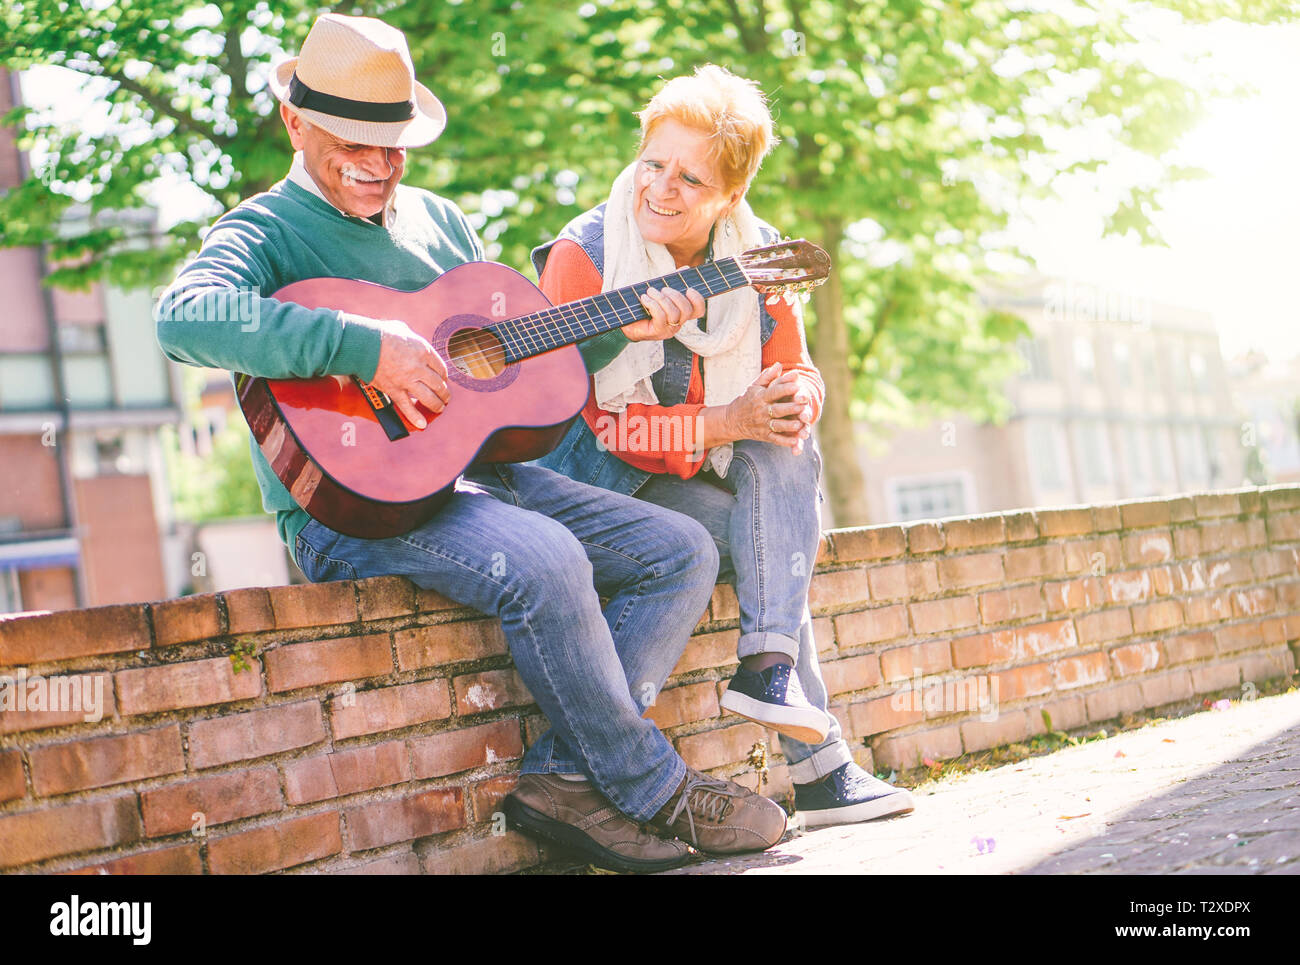 Gerne älteres Paar Spielen einer Gitarre, während draußen auf einer Wand an einem sonnigen Tag - Konzept der aktiven älteren Menschen Spaß mit Gitarre Stockfoto